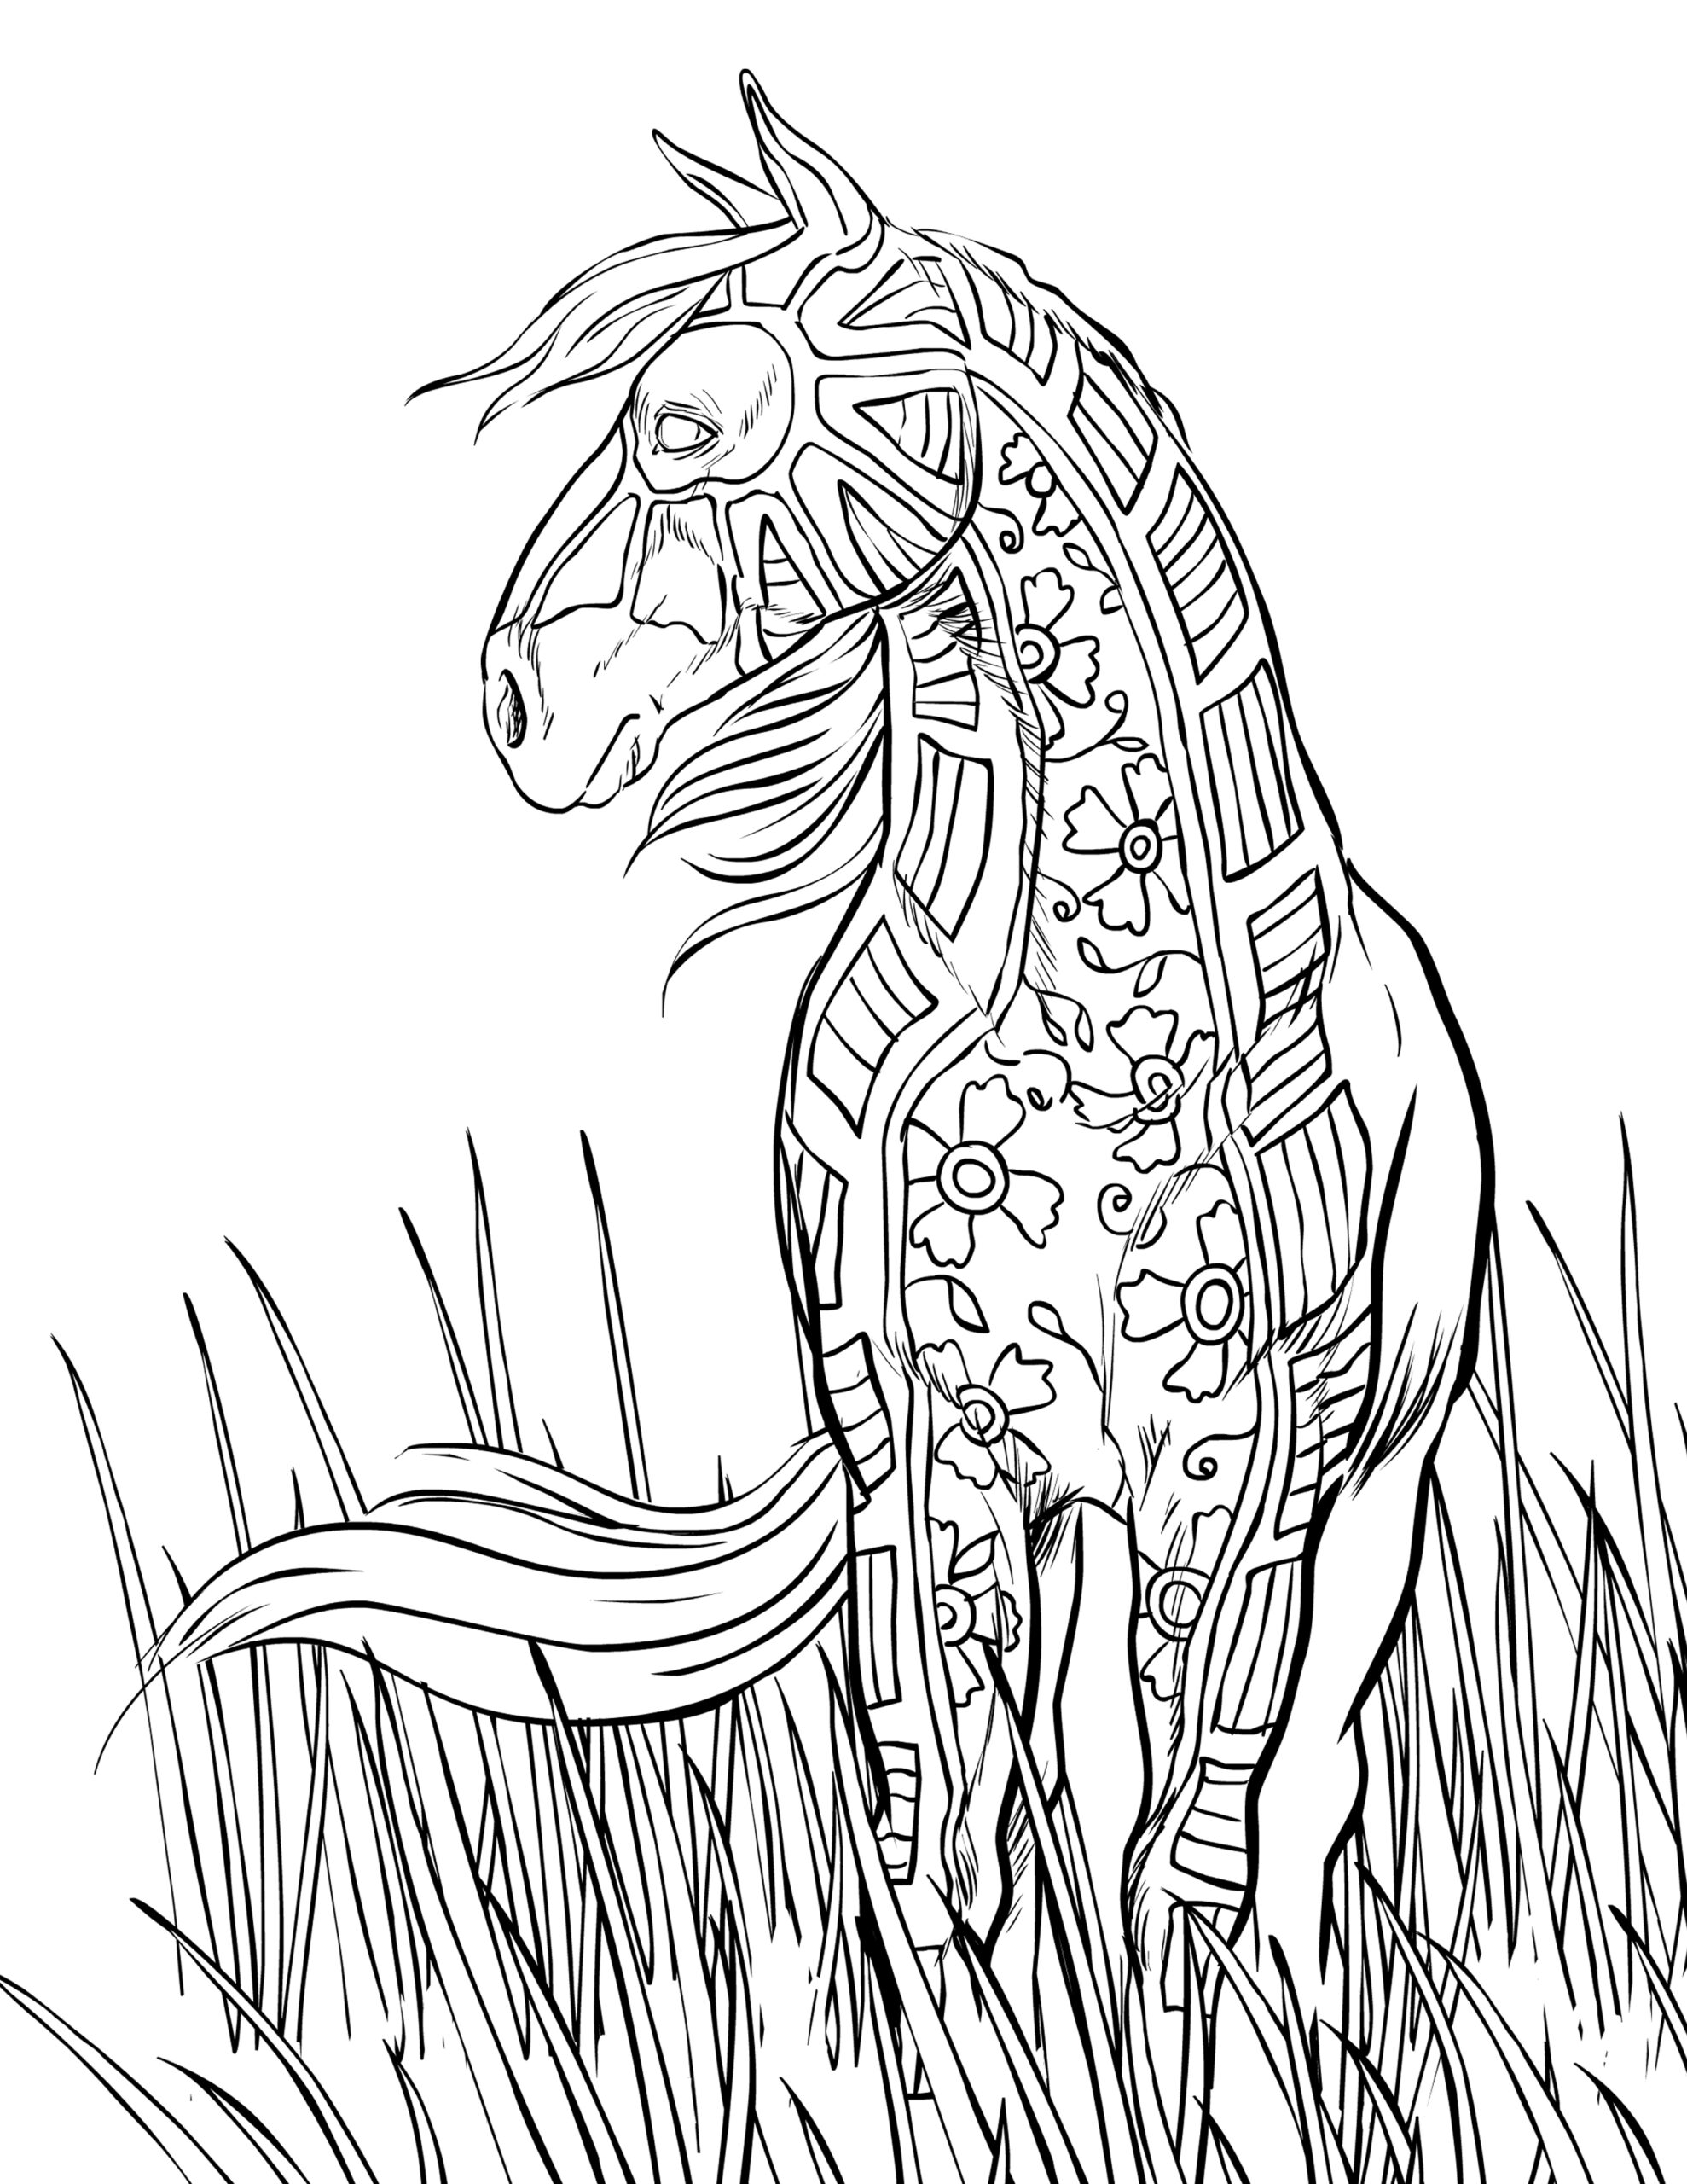 gambar sketsa kuda untuk diwarnai